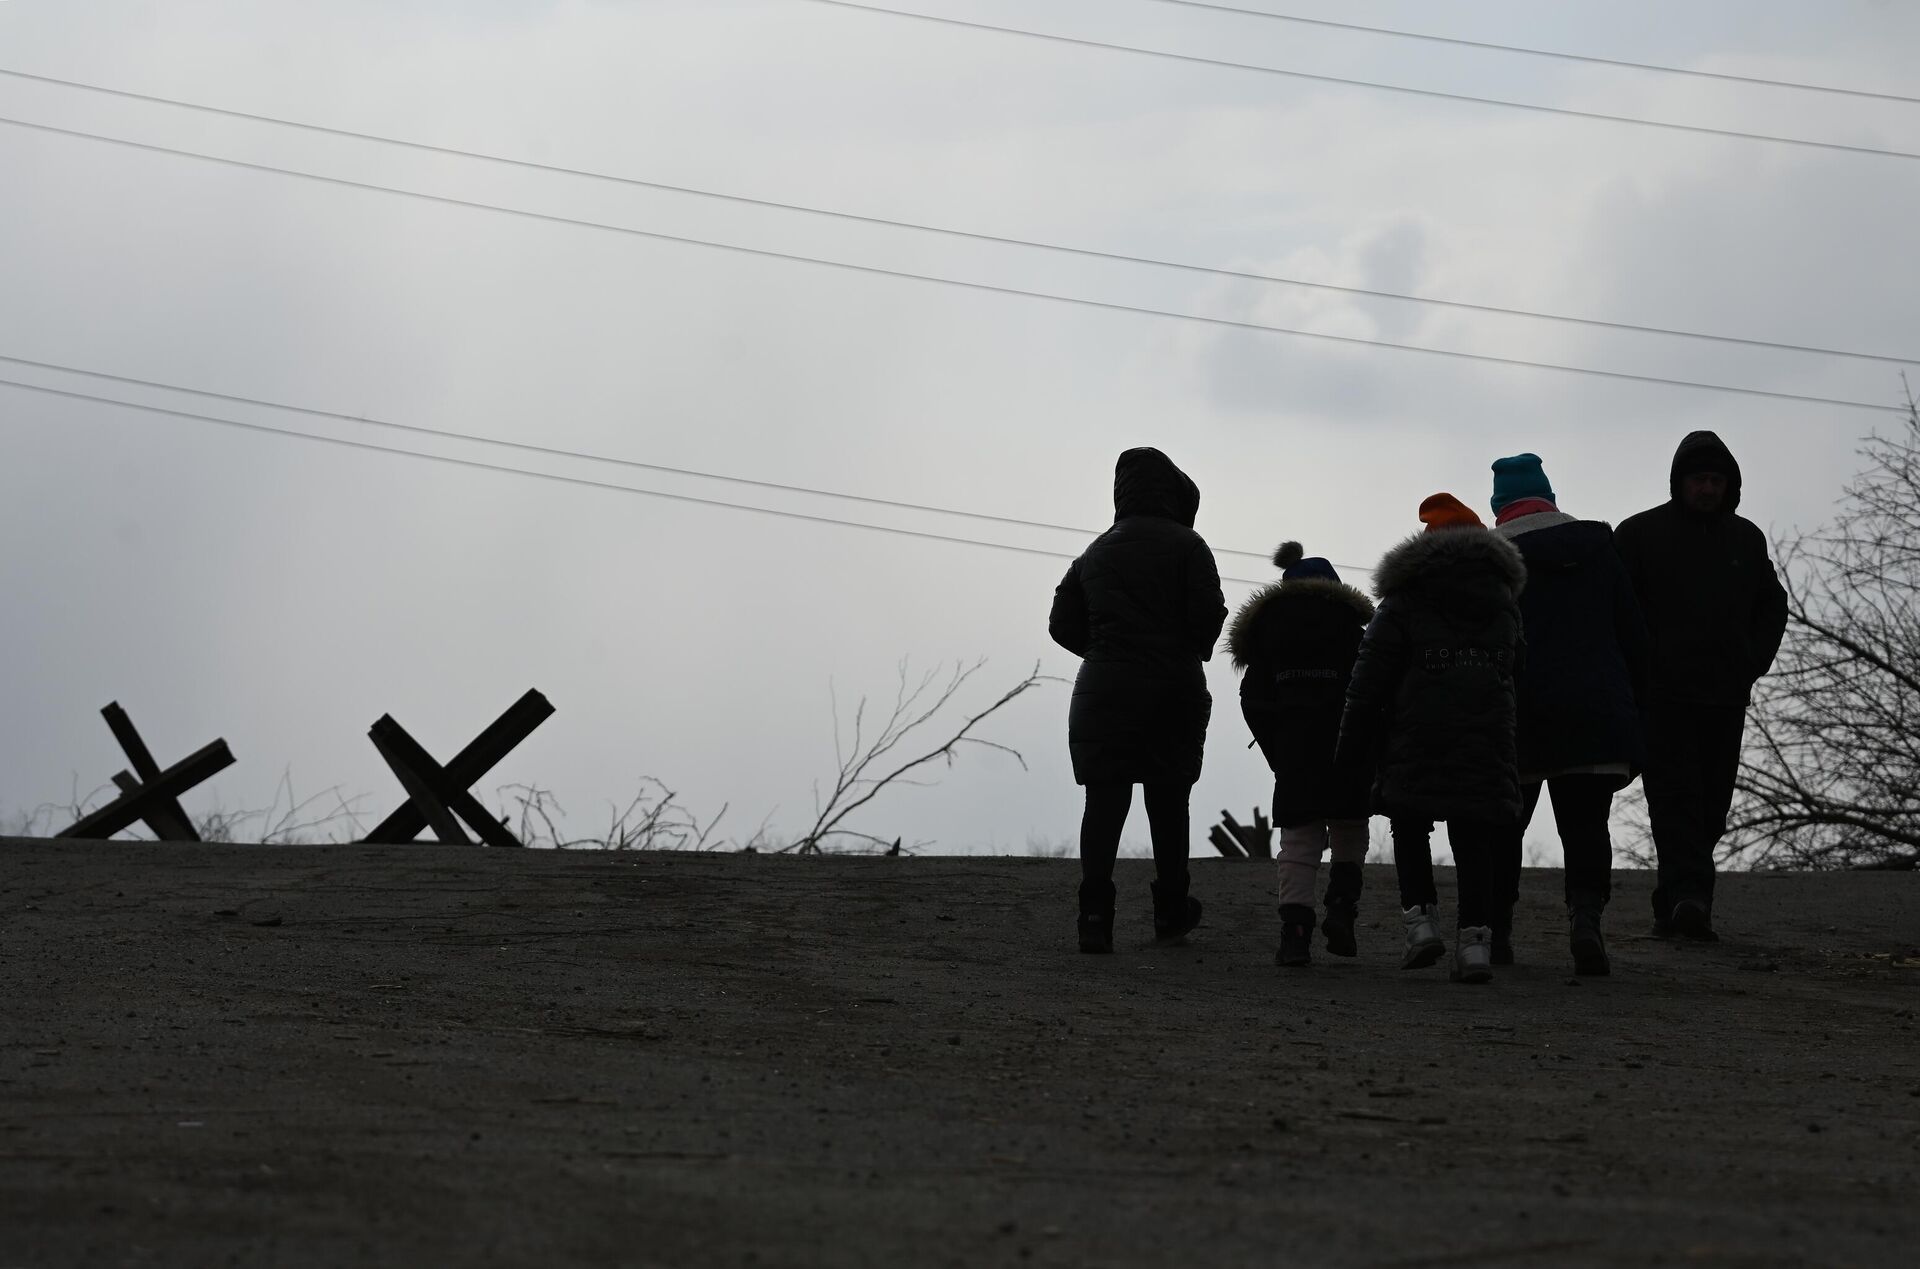 Беженцы на выезде из Мариуполя, 17 марта 2022 года  - Sputnik Латвия, 1920, 18.03.2022